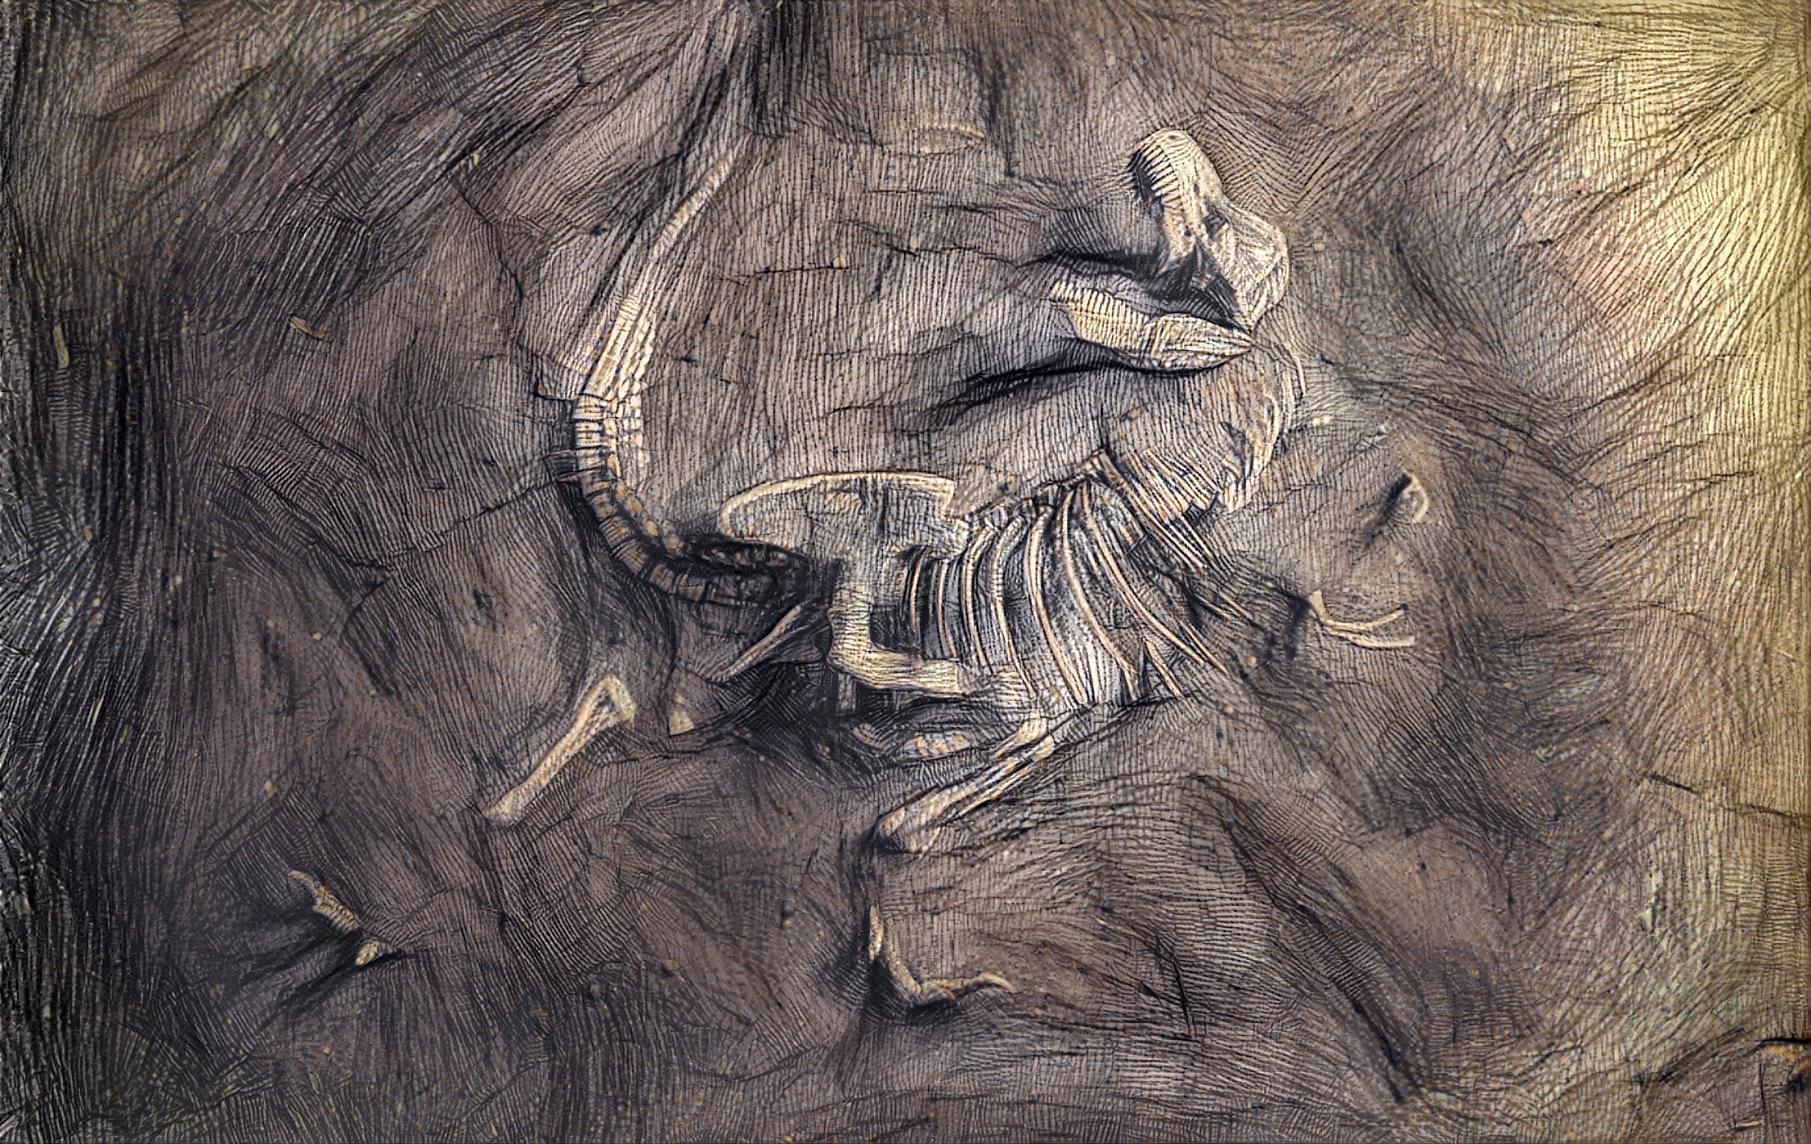 Drawn Fossil